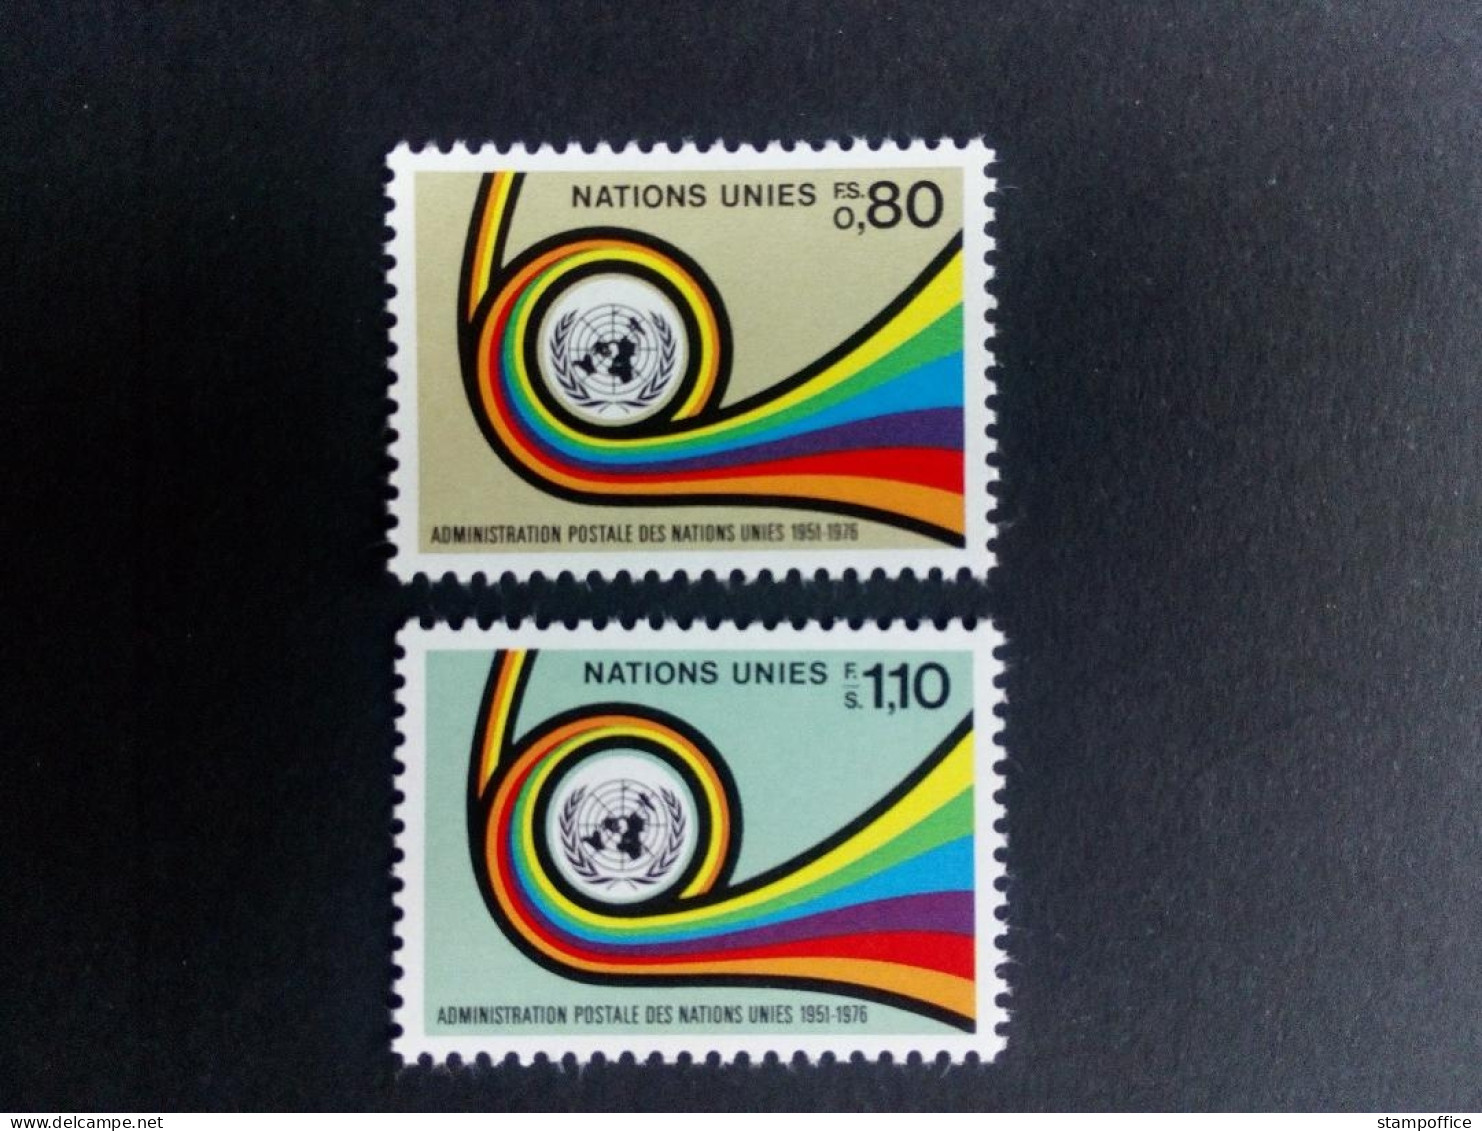 UNO GENF MI-NR. 60-61 POSTFRISCH(MINT) UNPA - POSTHORN 1976 - Unused Stamps